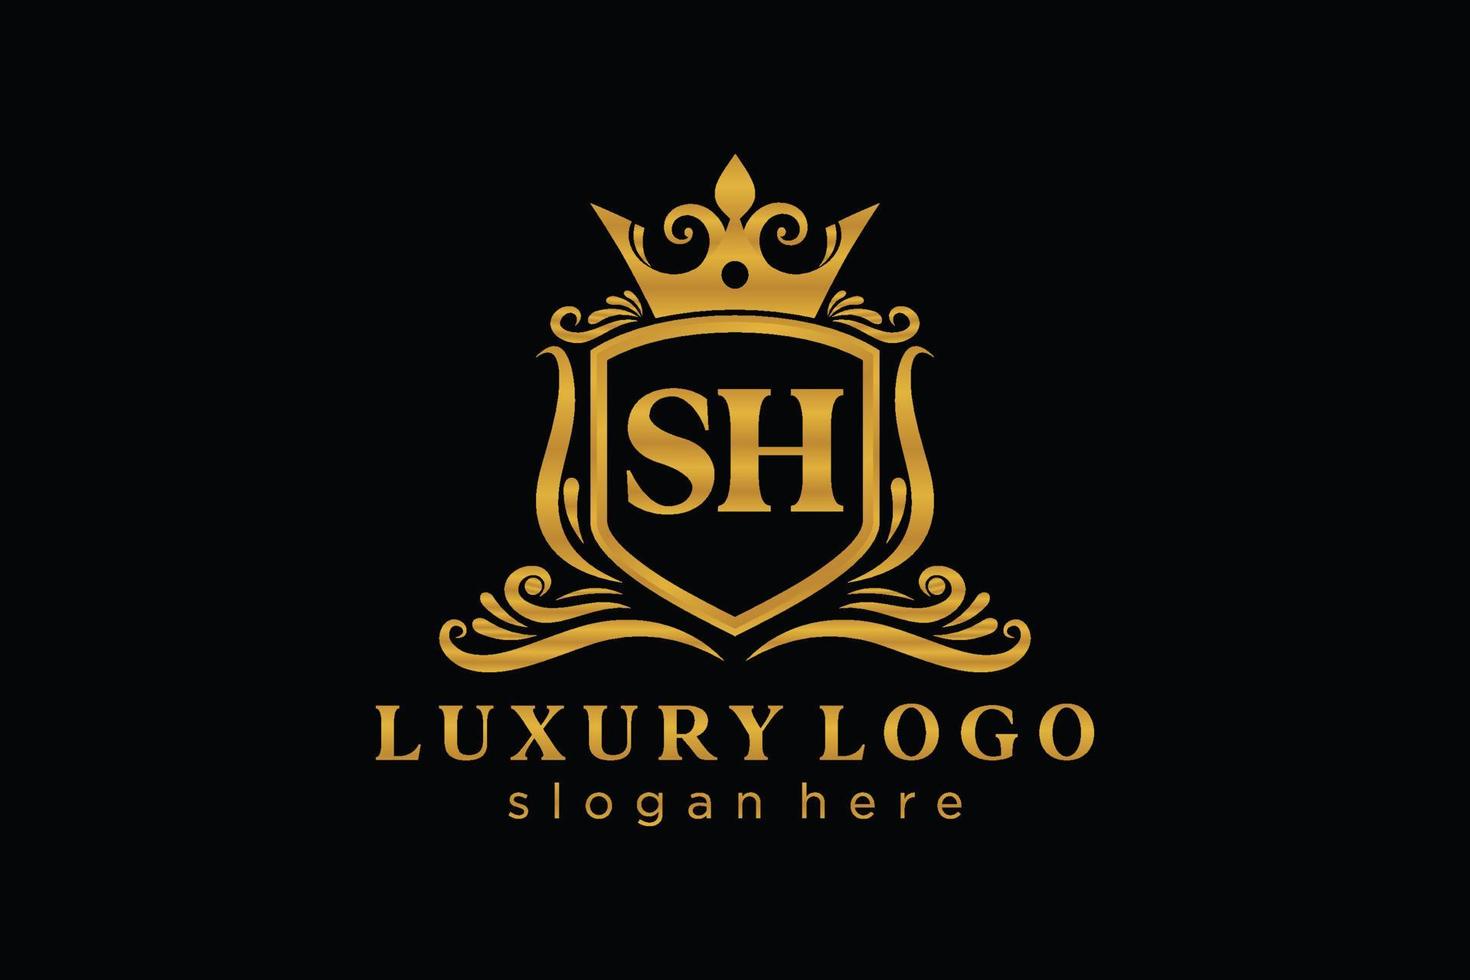 anfängliche sh-Buchstabe königliche Luxus-Logo-Vorlage in Vektorgrafiken für Restaurant, Lizenzgebühren, Boutique, Café, Hotel, heraldisch, Schmuck, Mode und andere Vektorillustrationen. vektor